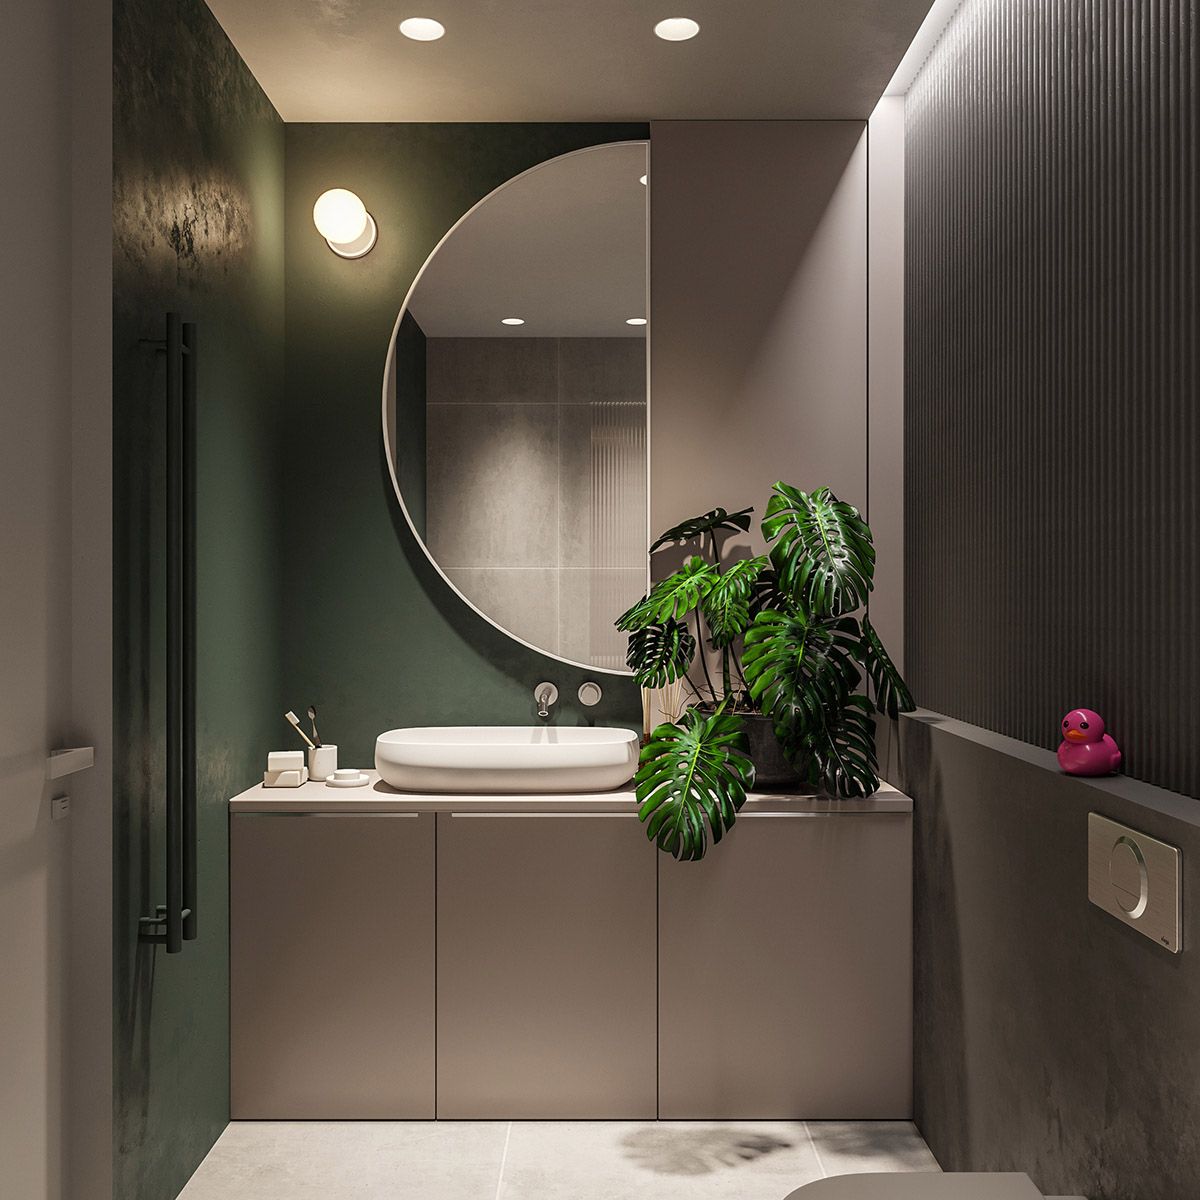 Green Bathroom with Elegant Mirror